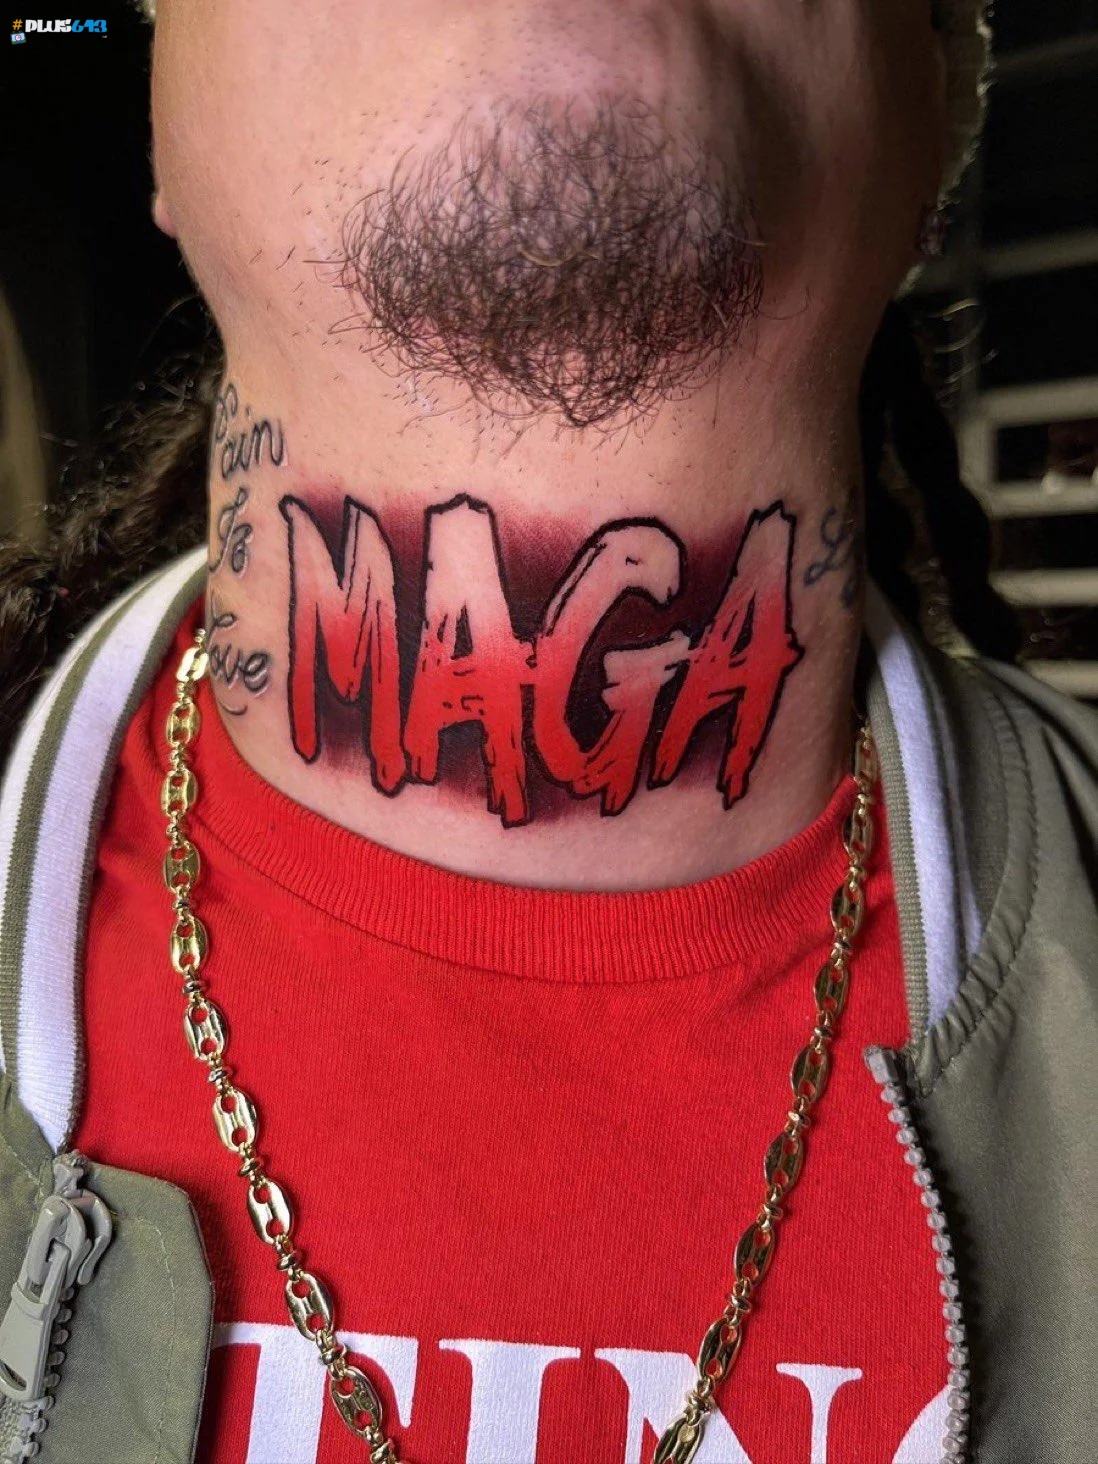 Tattoo artist misspelled 